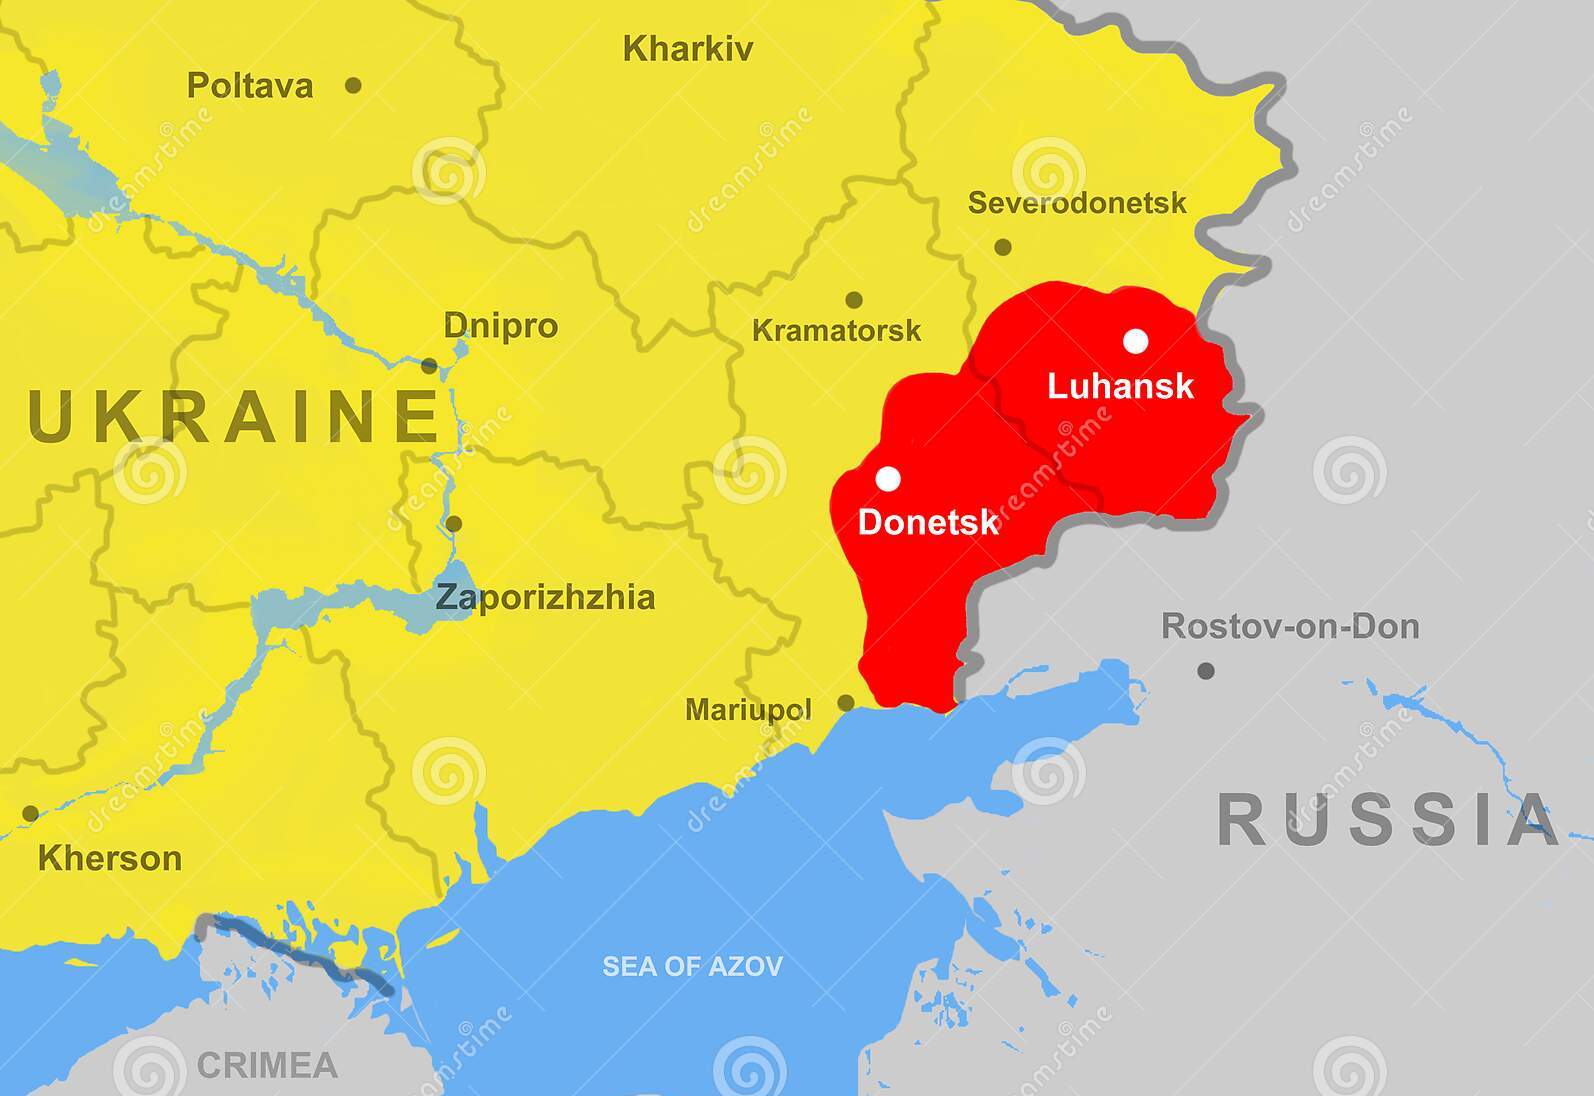 Vùng Donbass (màu đỏ) được xem là nơi quan trọng với cả Nga và Ukraine. Ảnh minh họa: Dreams Time